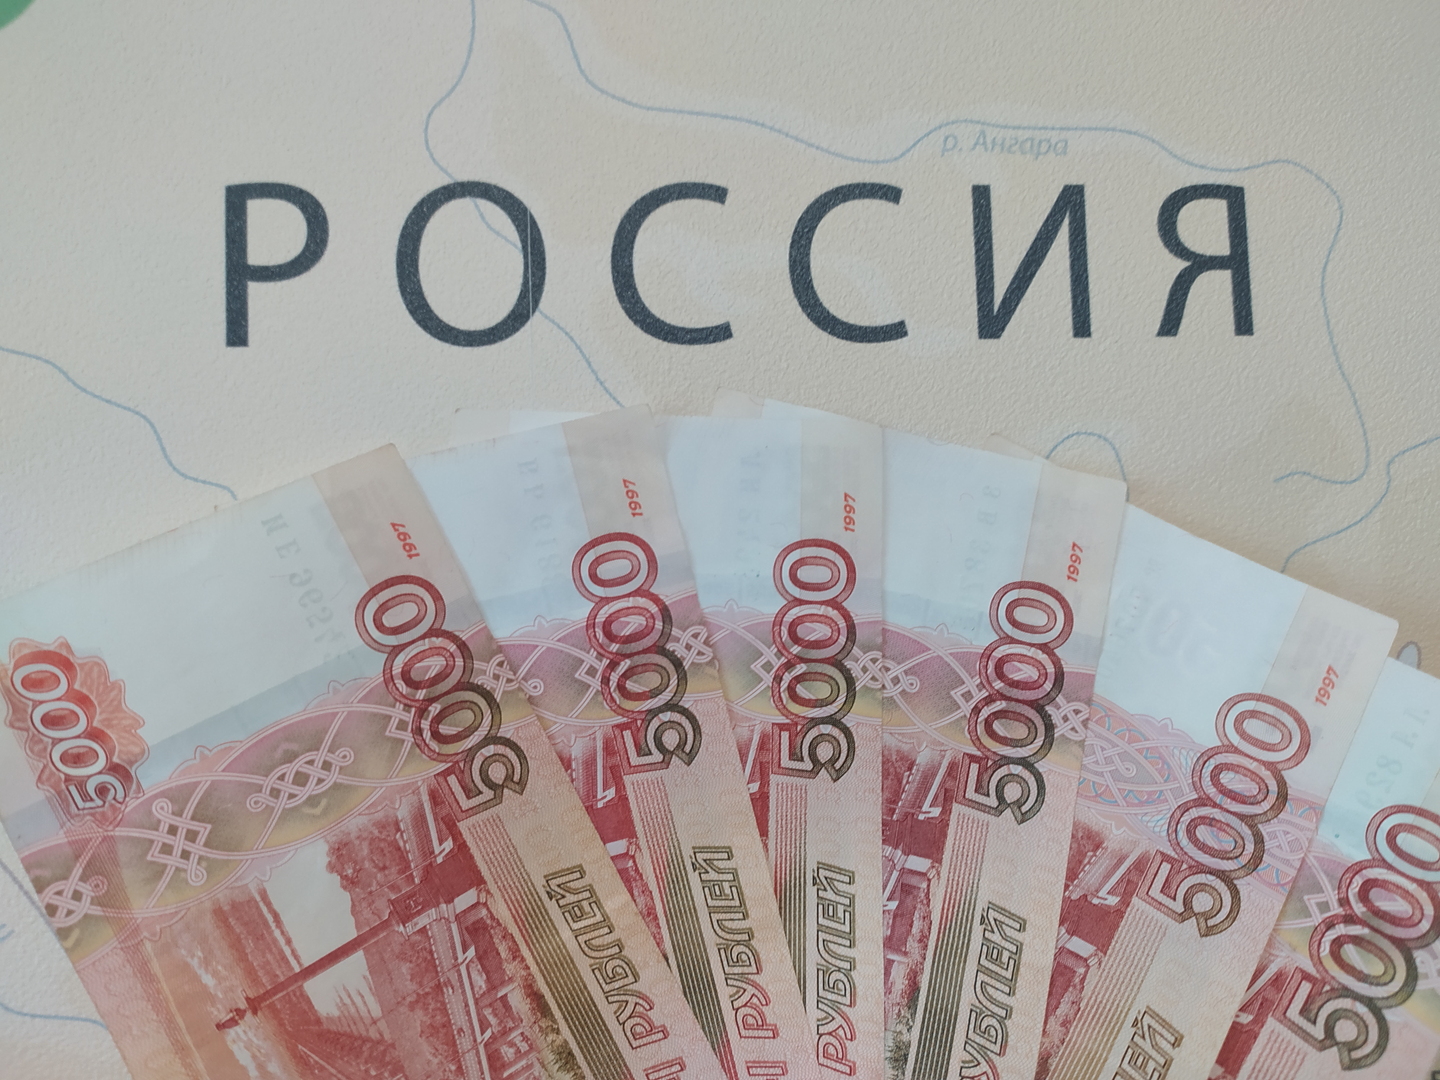 المركزي الروسي يعيد مستوى سعر الفائدة الرئيسي إلى مستواه قبل فرض العقوبات الغربية